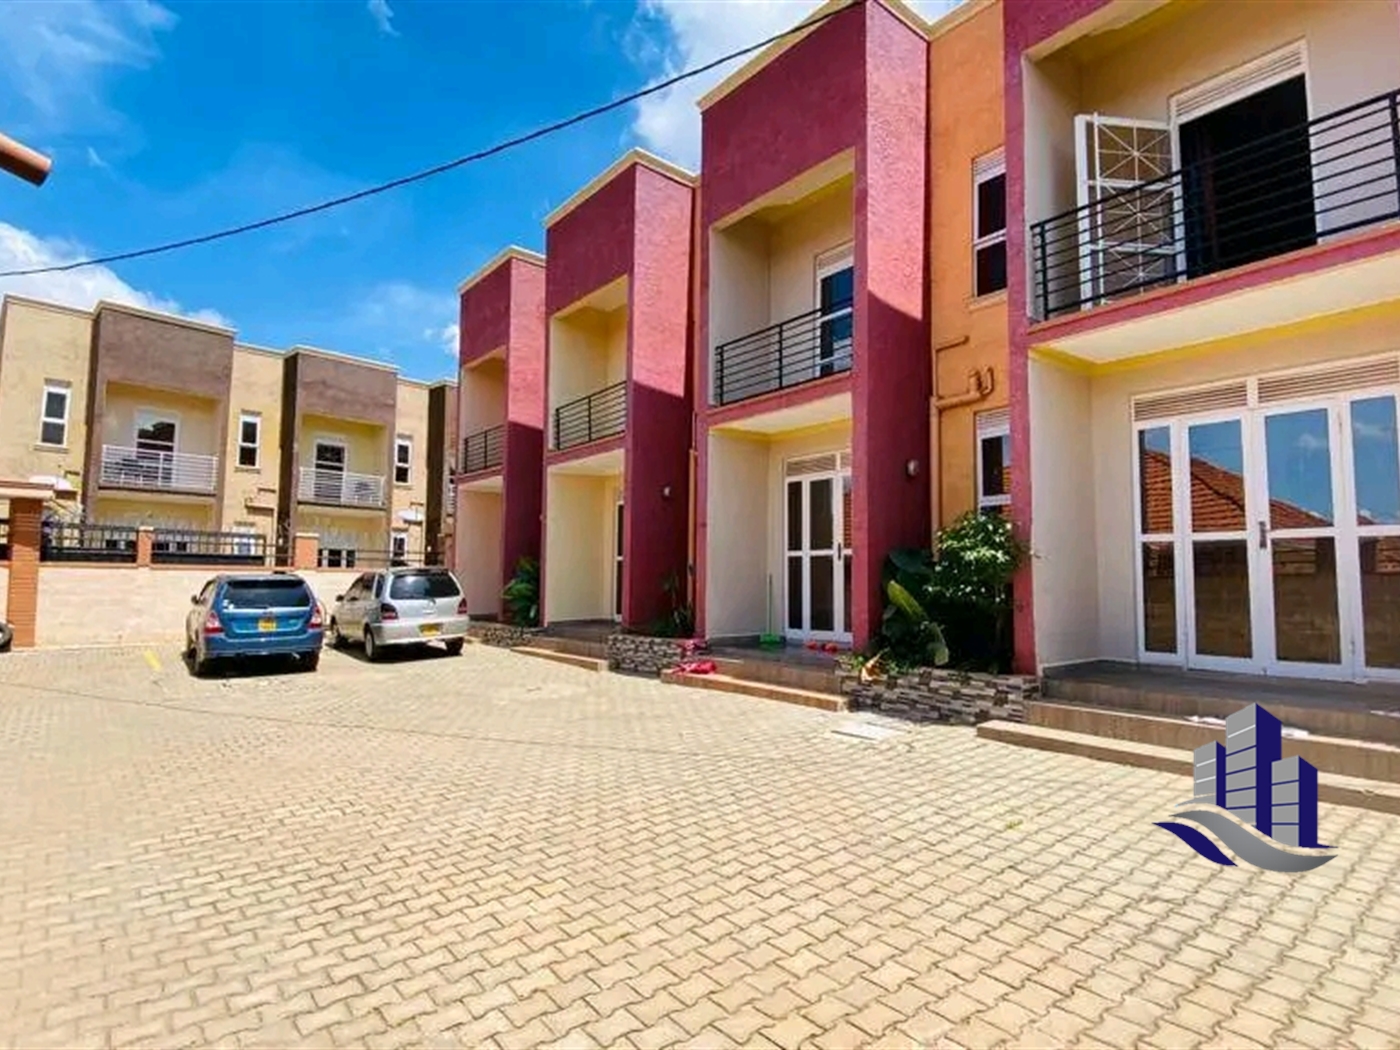 Apartment block for sale in Bukasa Kampala